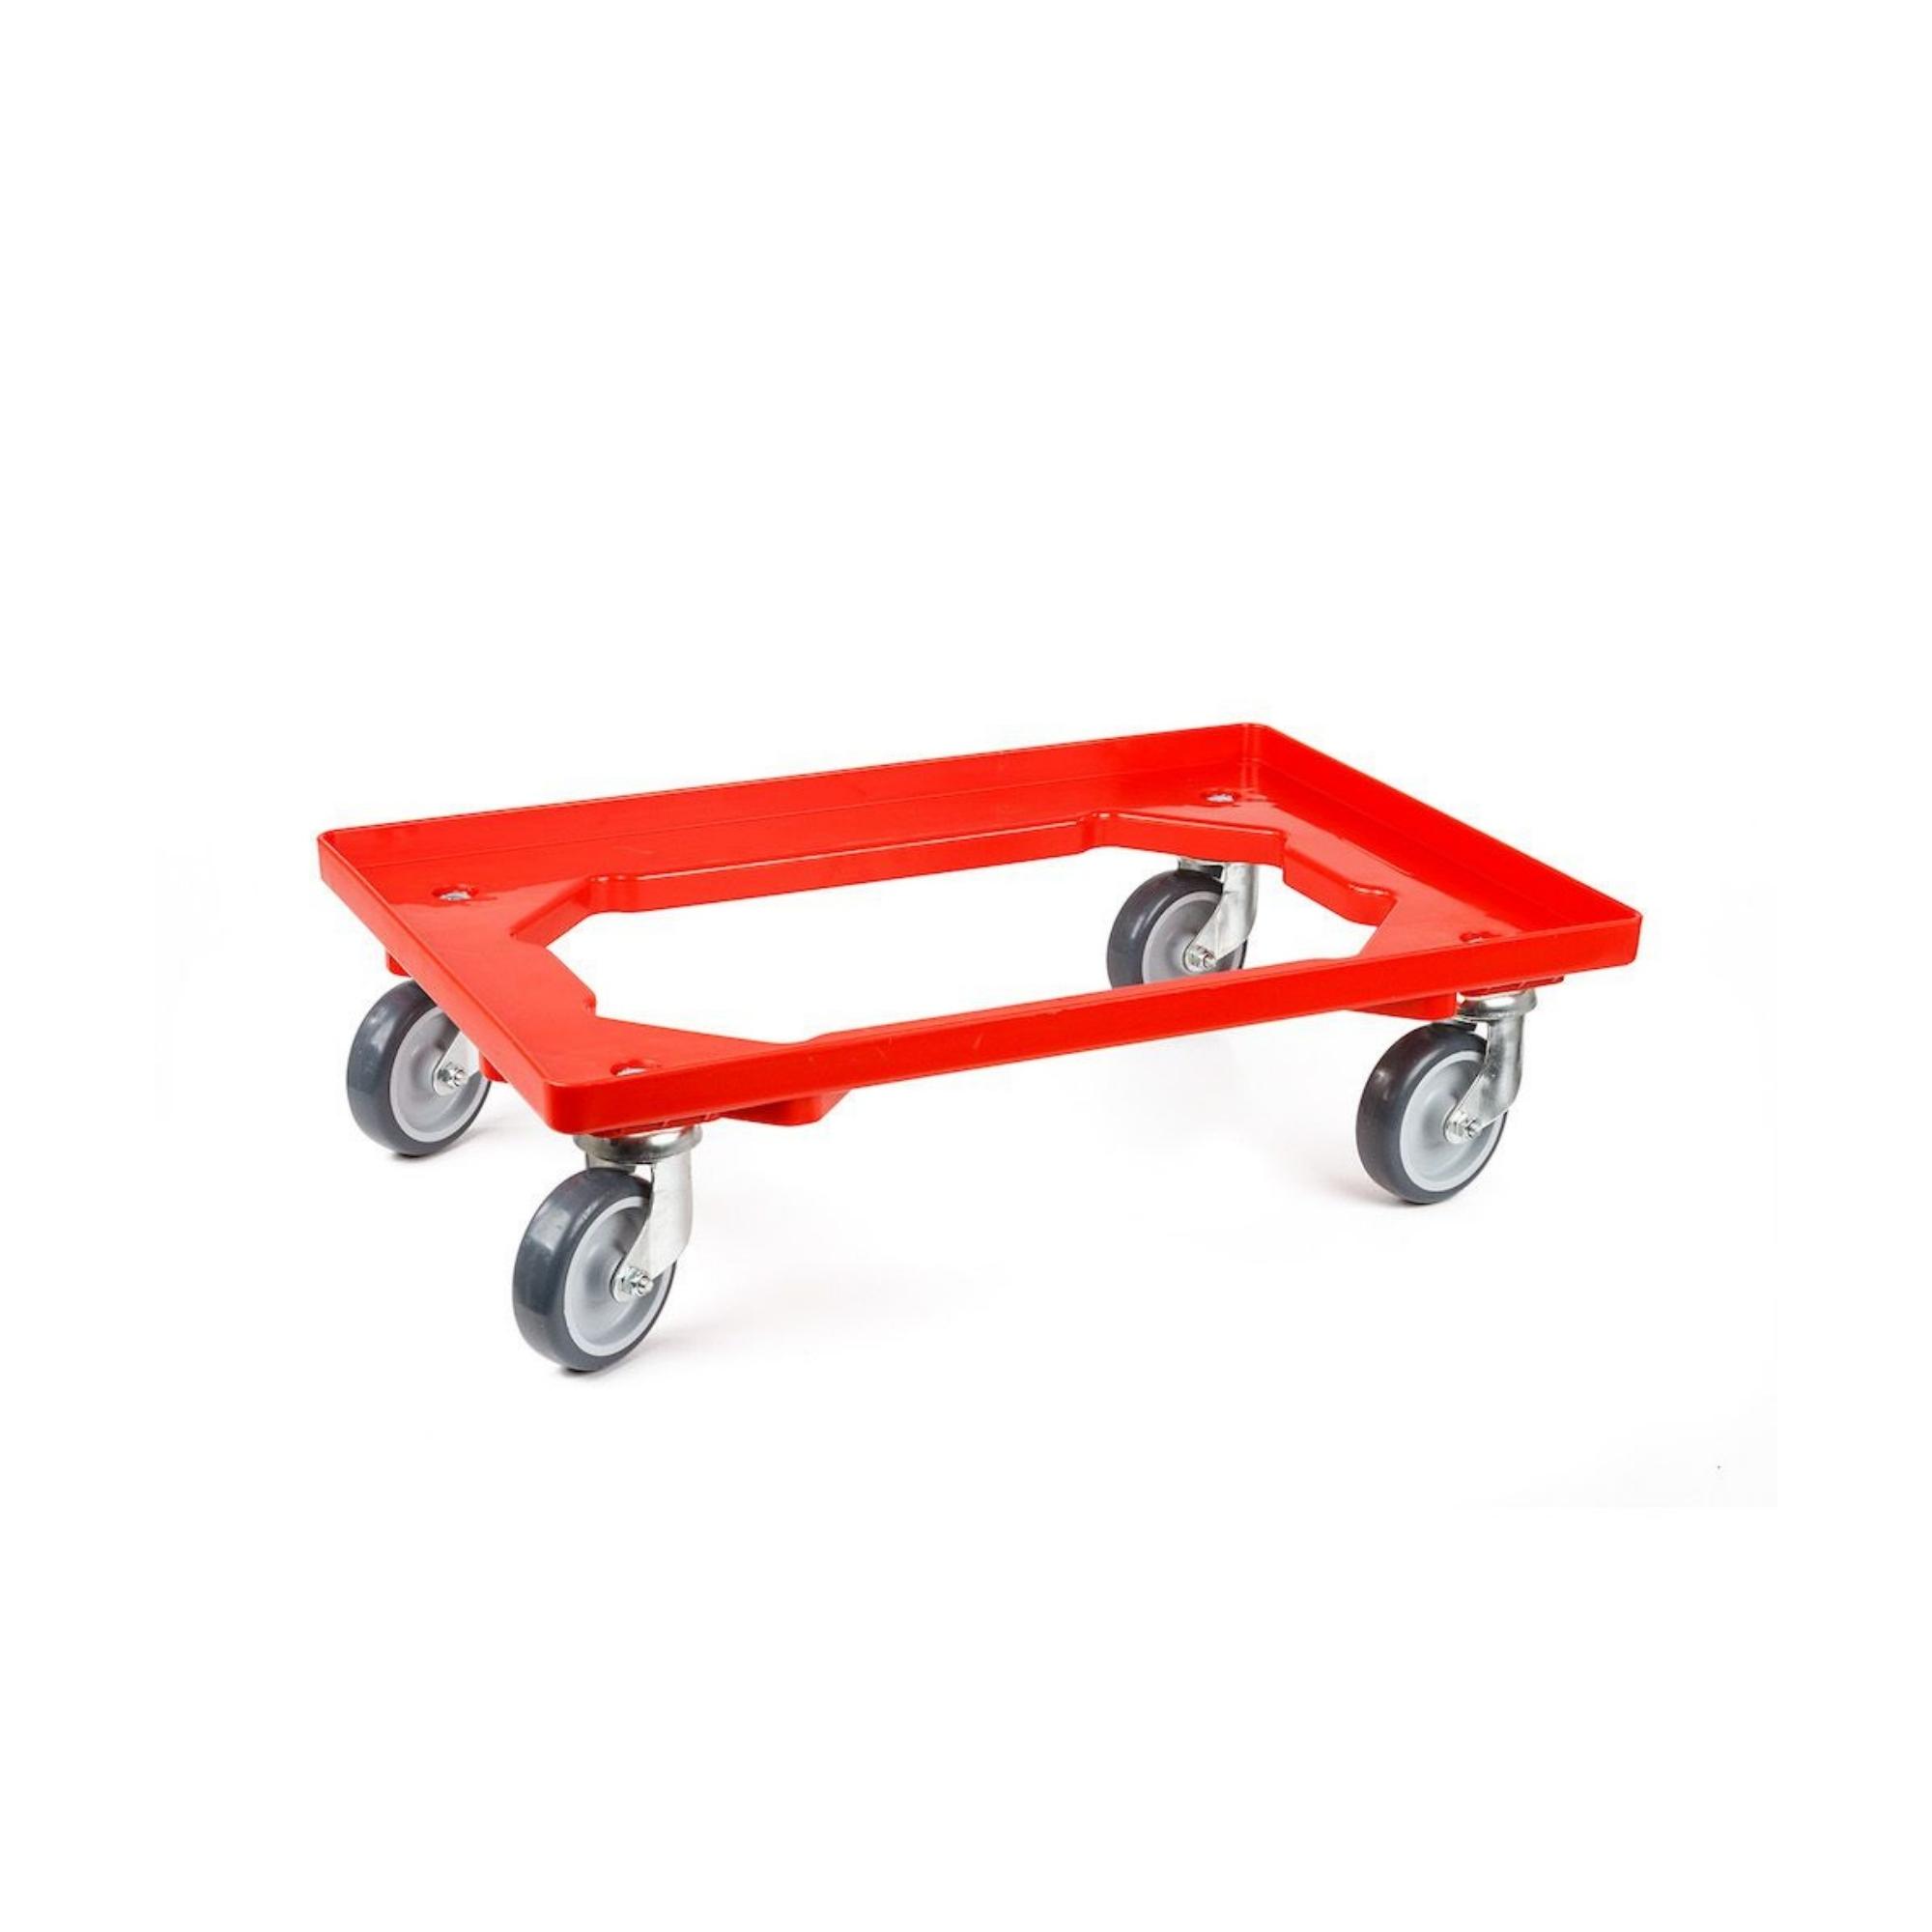 Transportroller für Euroboxen 60x40cm mit Gummiräder rot | Offenes Deck | 2 Lenkrollen & 2 Bremsrollen | Traglast 300kg | Kistenroller Logistikroller Rollwagen Profi-Fahrgestell